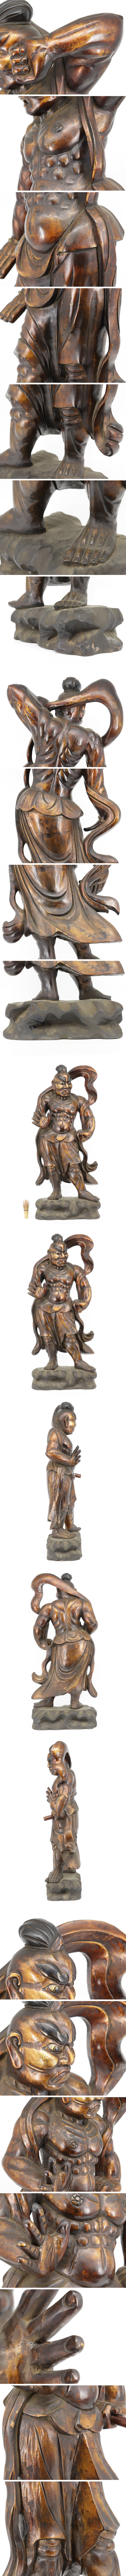 【日本買付】仏教美術 特大約90㌢ 木造 仁王像 金剛力士像 阿形吽形 一対 木彫 阿吽像 仏像 佛像 A164 仏像